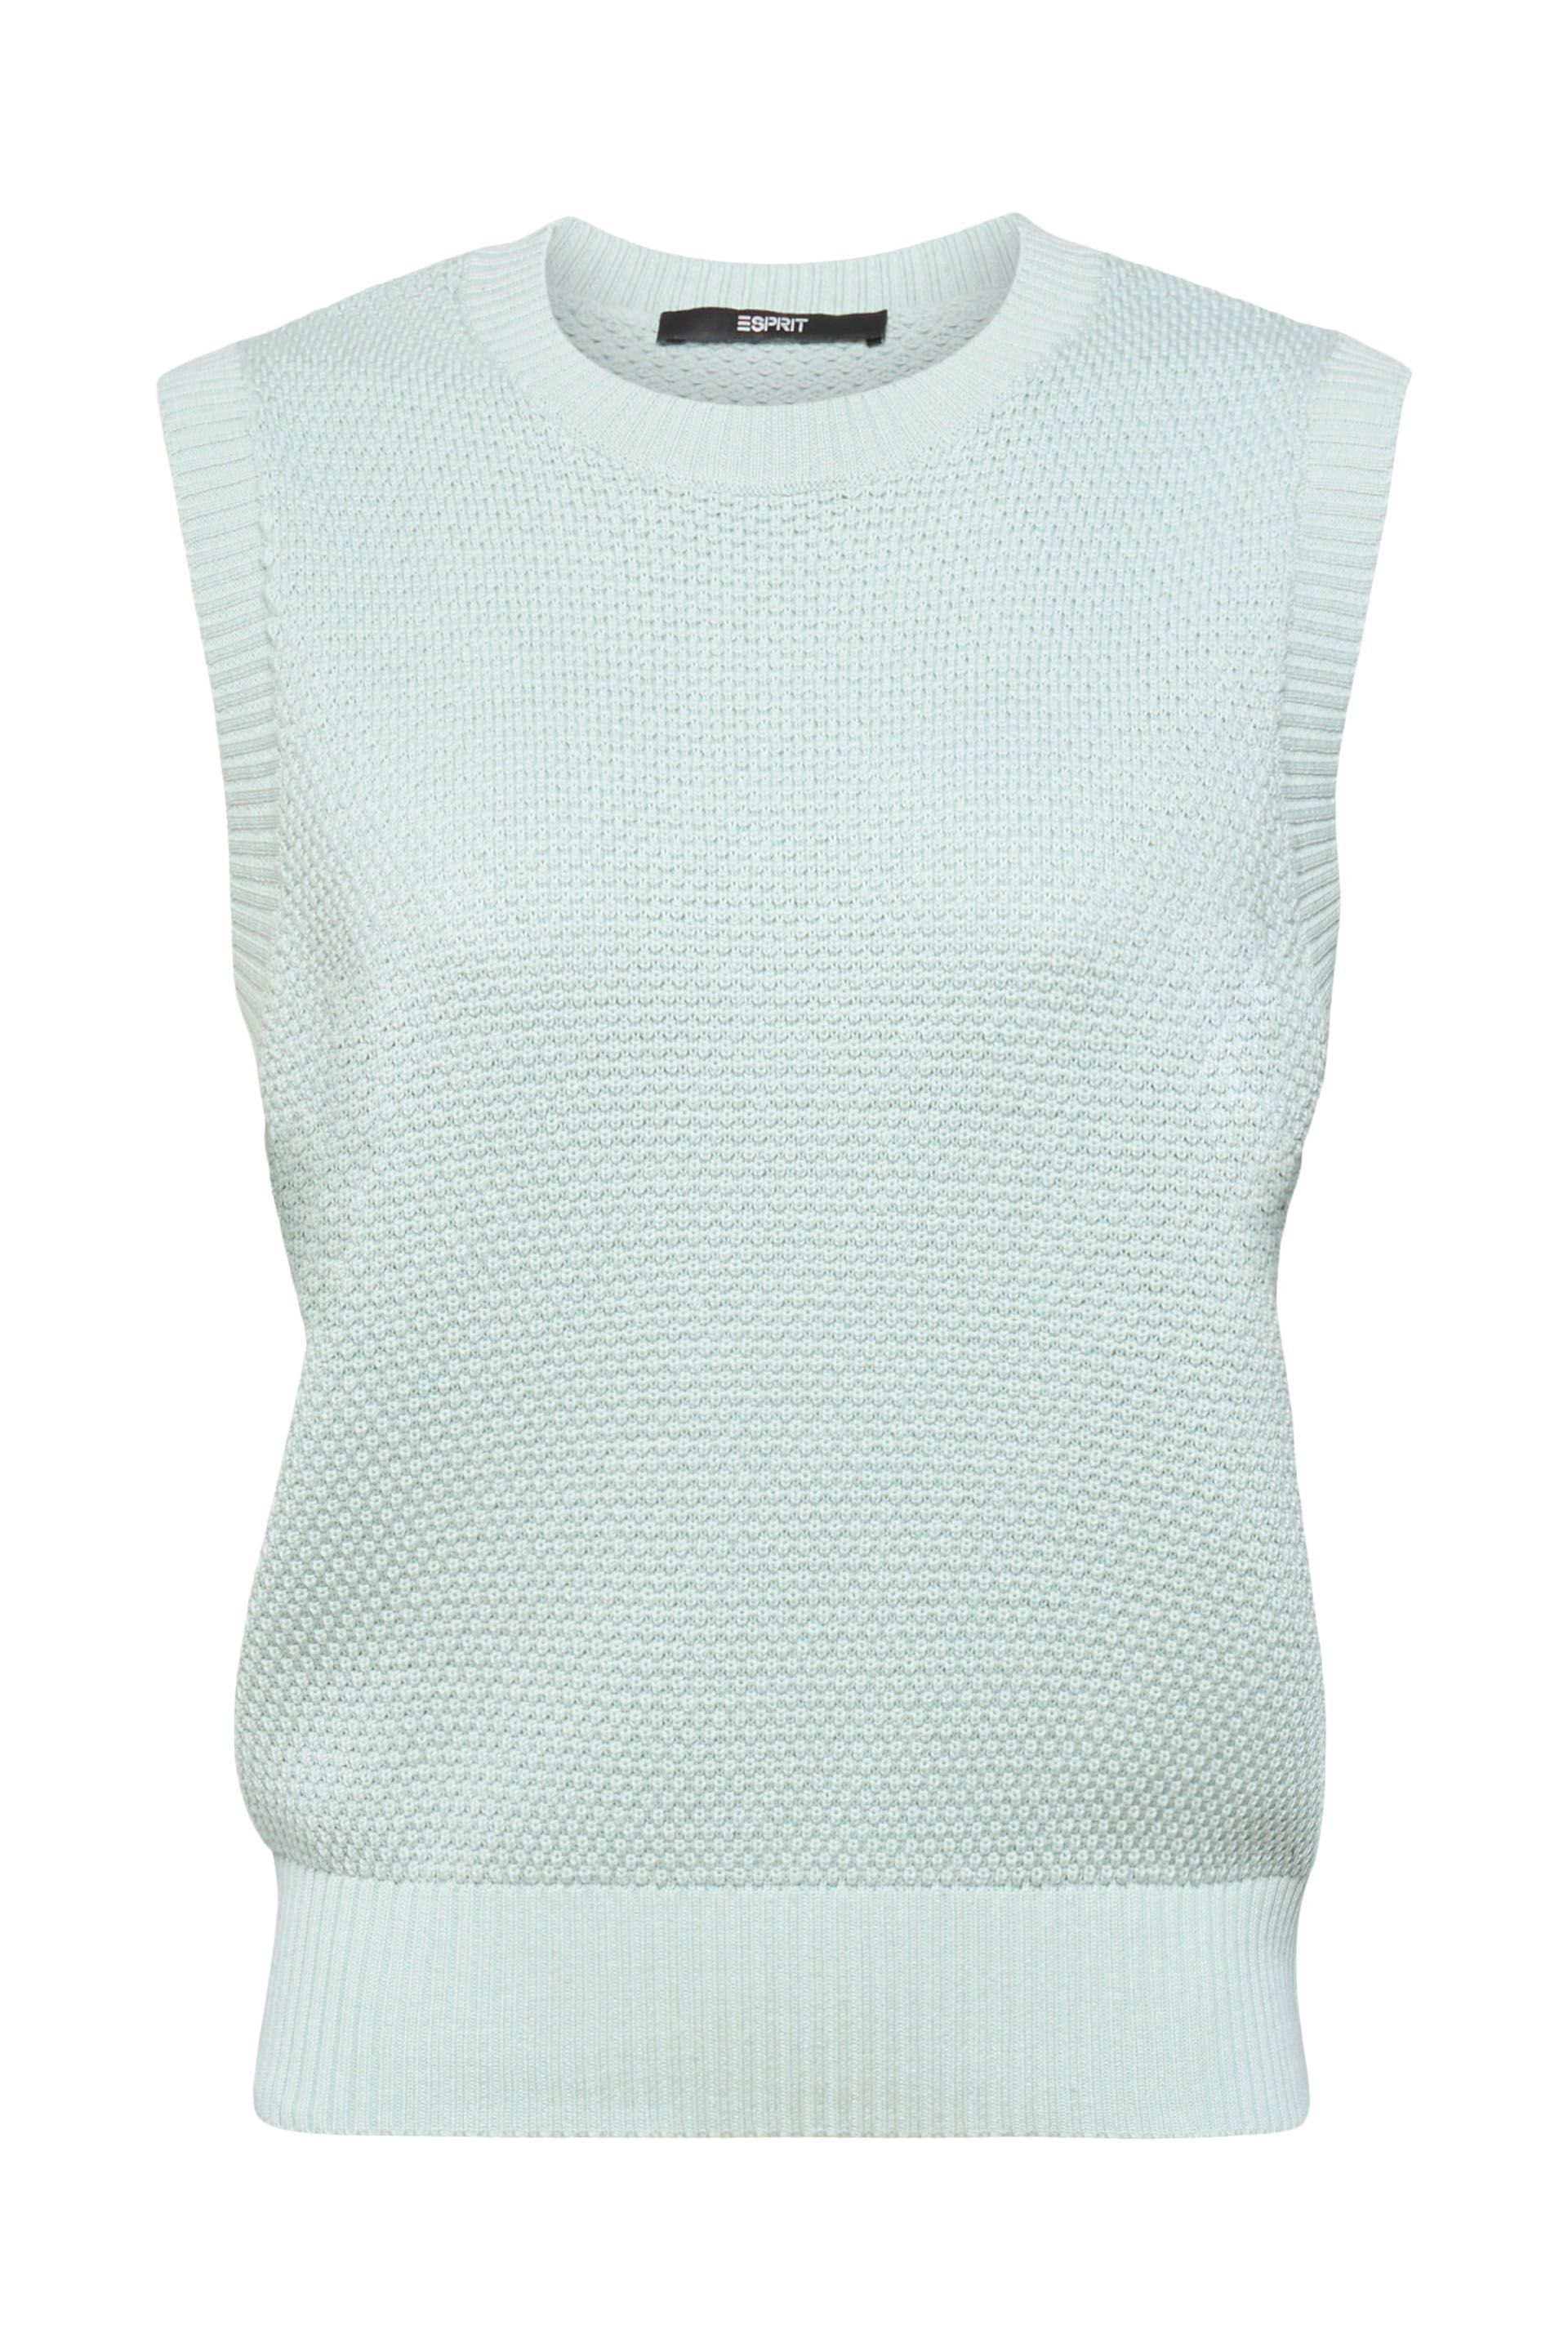 Esprit - Cotton blend vest, Light Blue, large image number 0